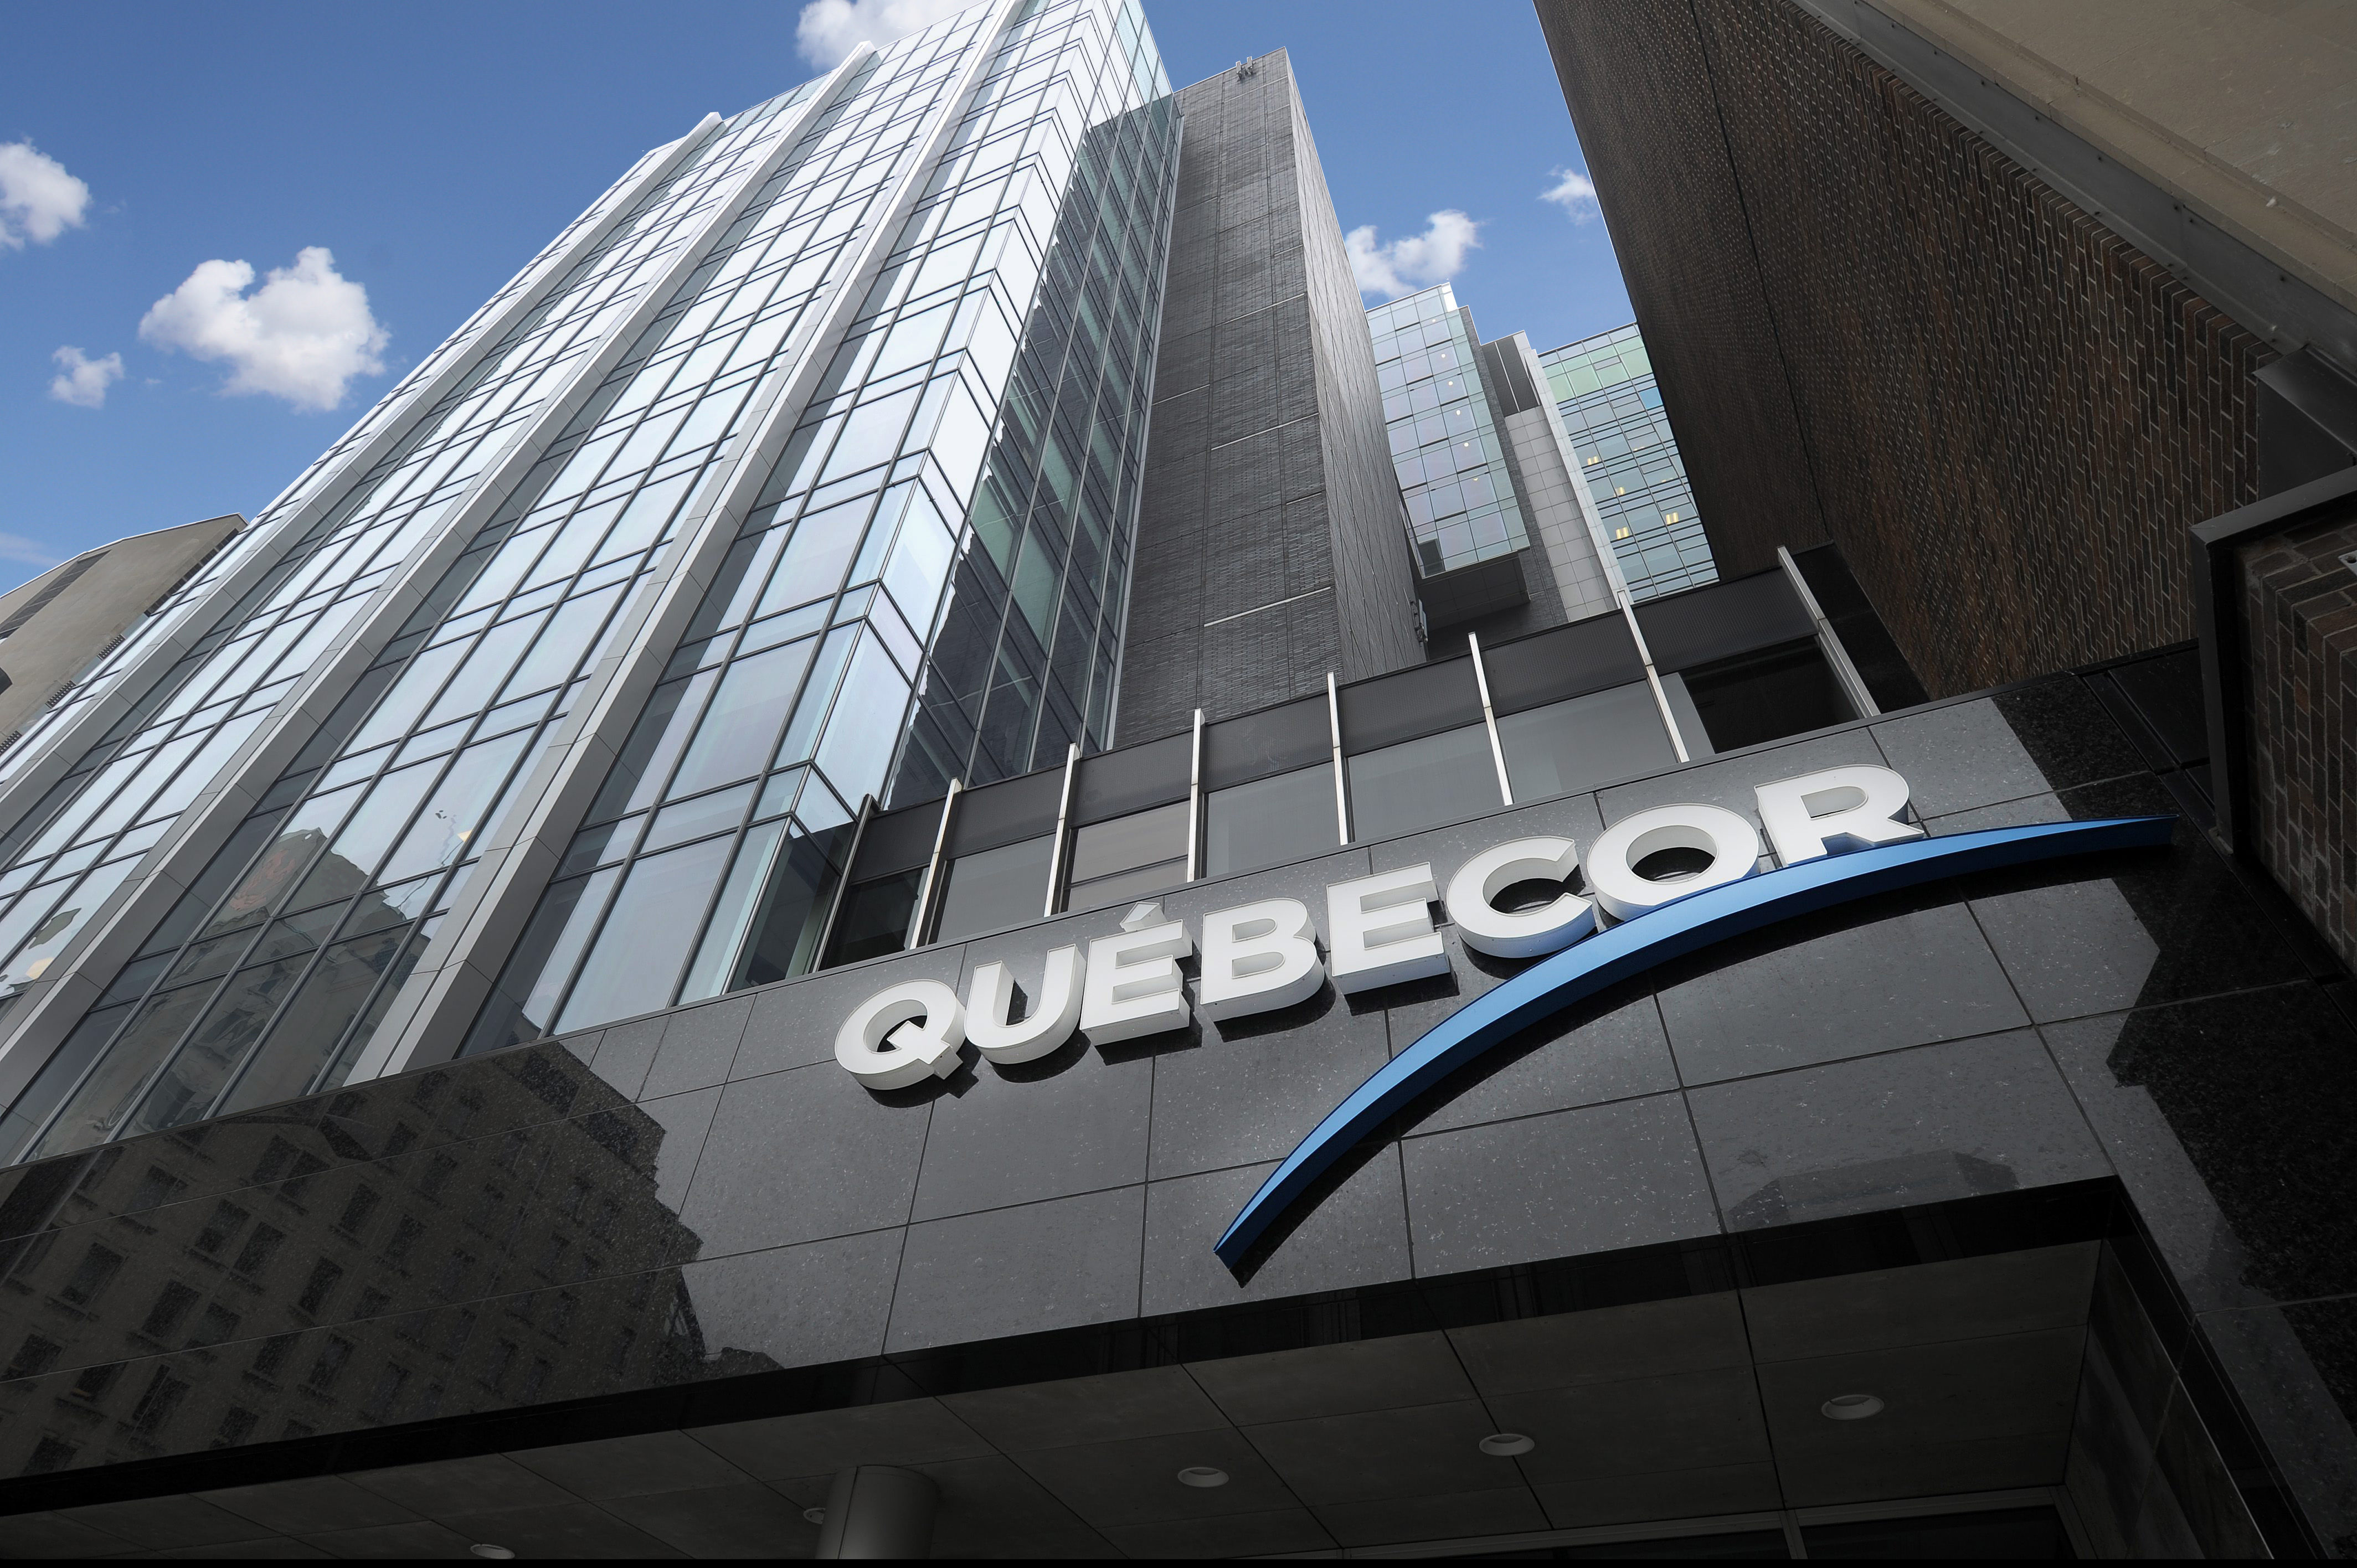 Exterior or Quebecor building